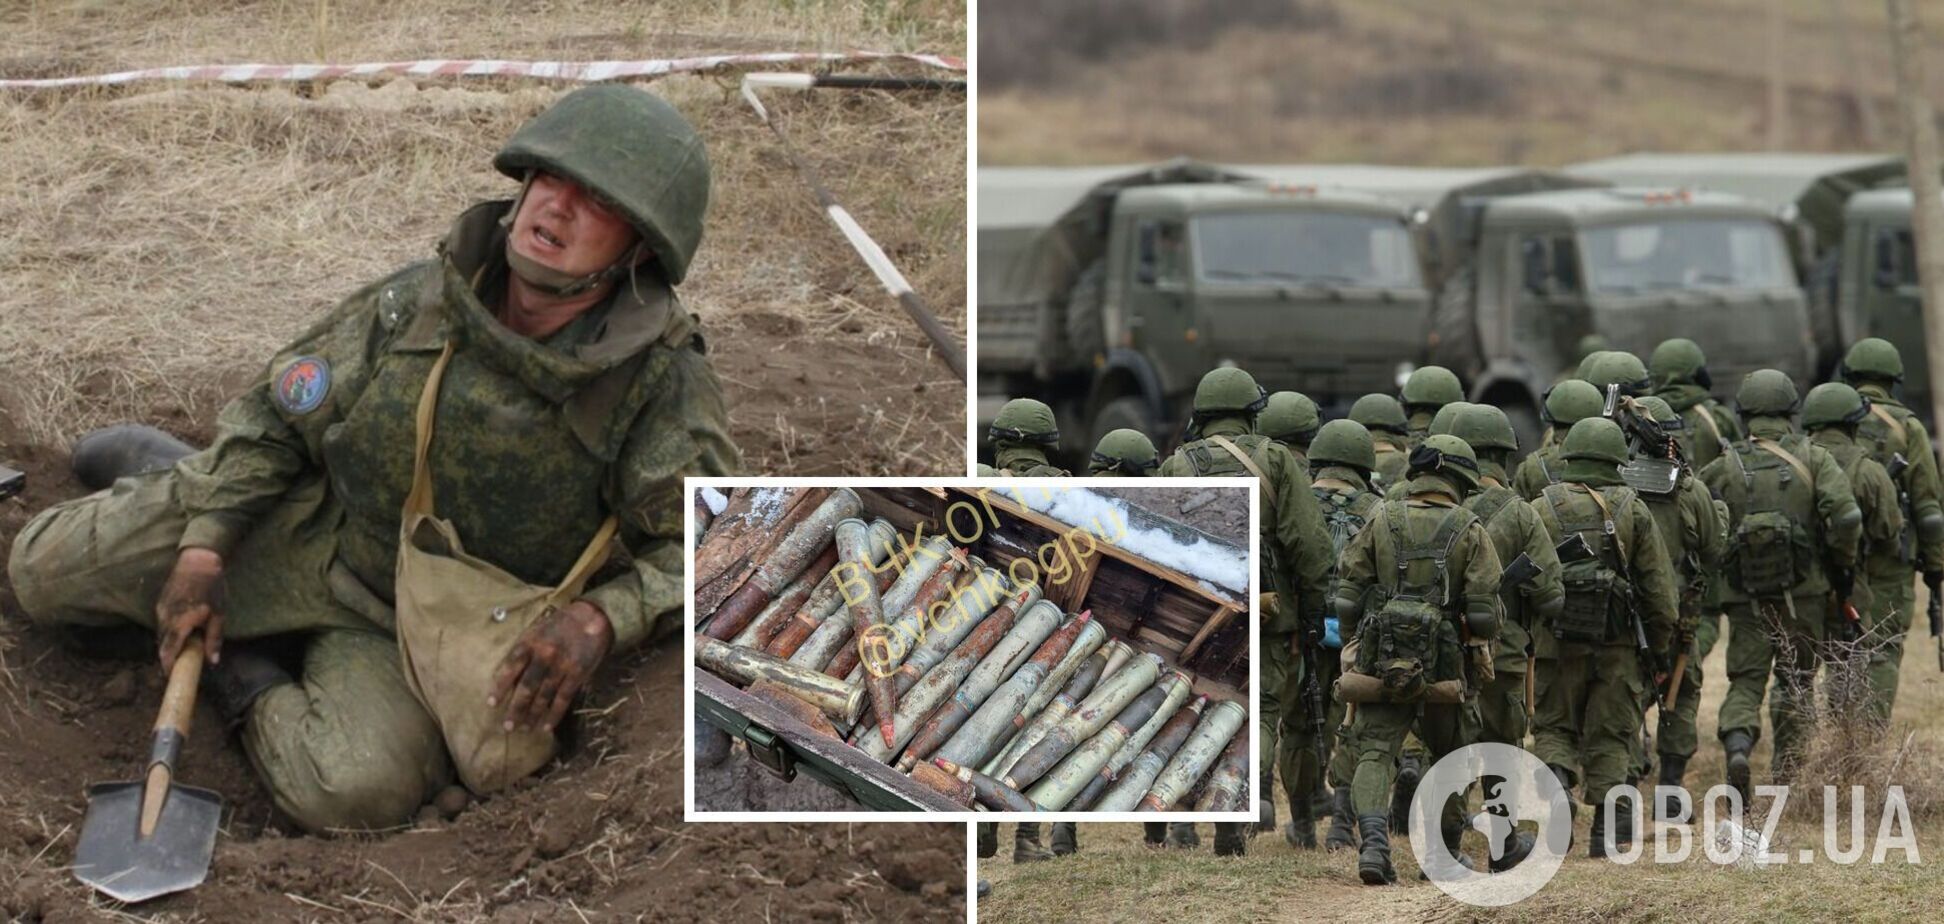 Боеприпасов не хватает не только 'вагнеровцам': стало известно о дефиците вооружения в других подразделениях армии РФ. Фото